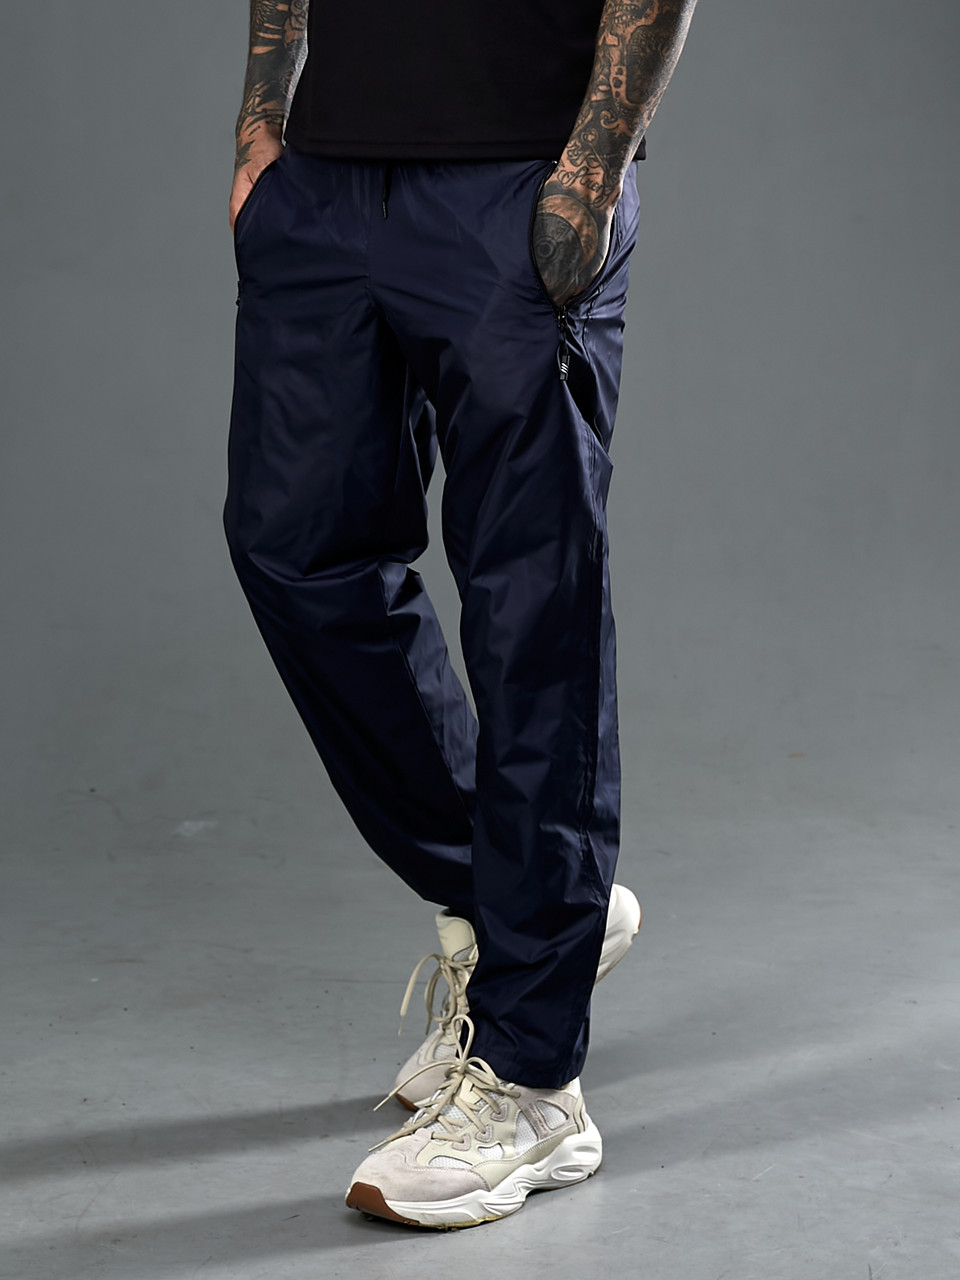 Чоловічі спортивні штани з плащової тканини з сітчастою підкладкою розміри від 50 до 58